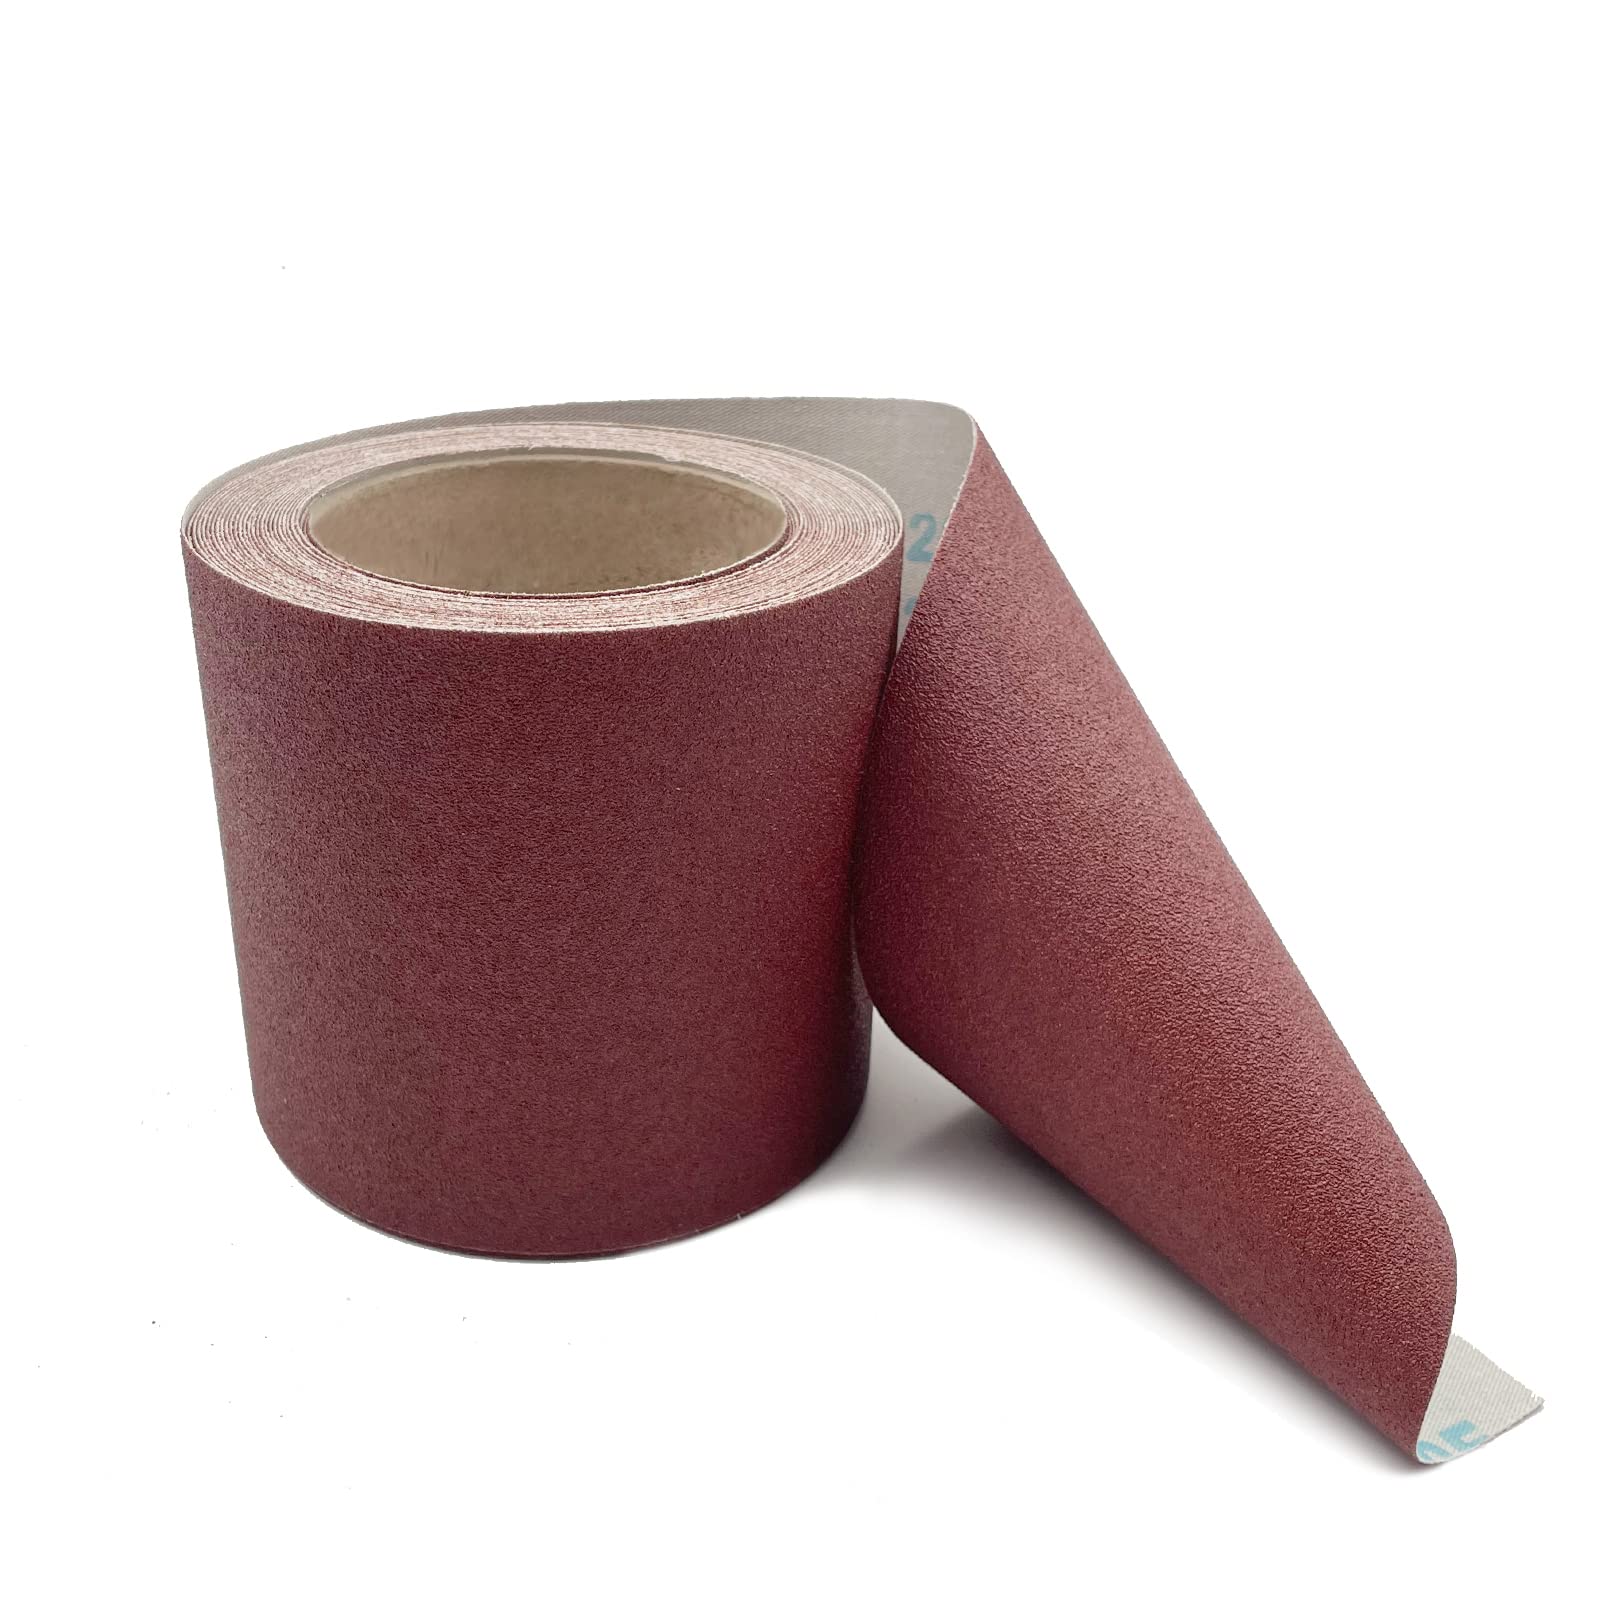 120 Grit Emery Cloth Roll, 4.5 Inch Wide 32.8 Ft Long (Equals 1/4 Sheet Sandpaper 71 Pcs) Abrasive Sandpaper Rolls for Metal Automotive Wood Furniture Sanding Paper Drum Palm Sander (120 Grit)